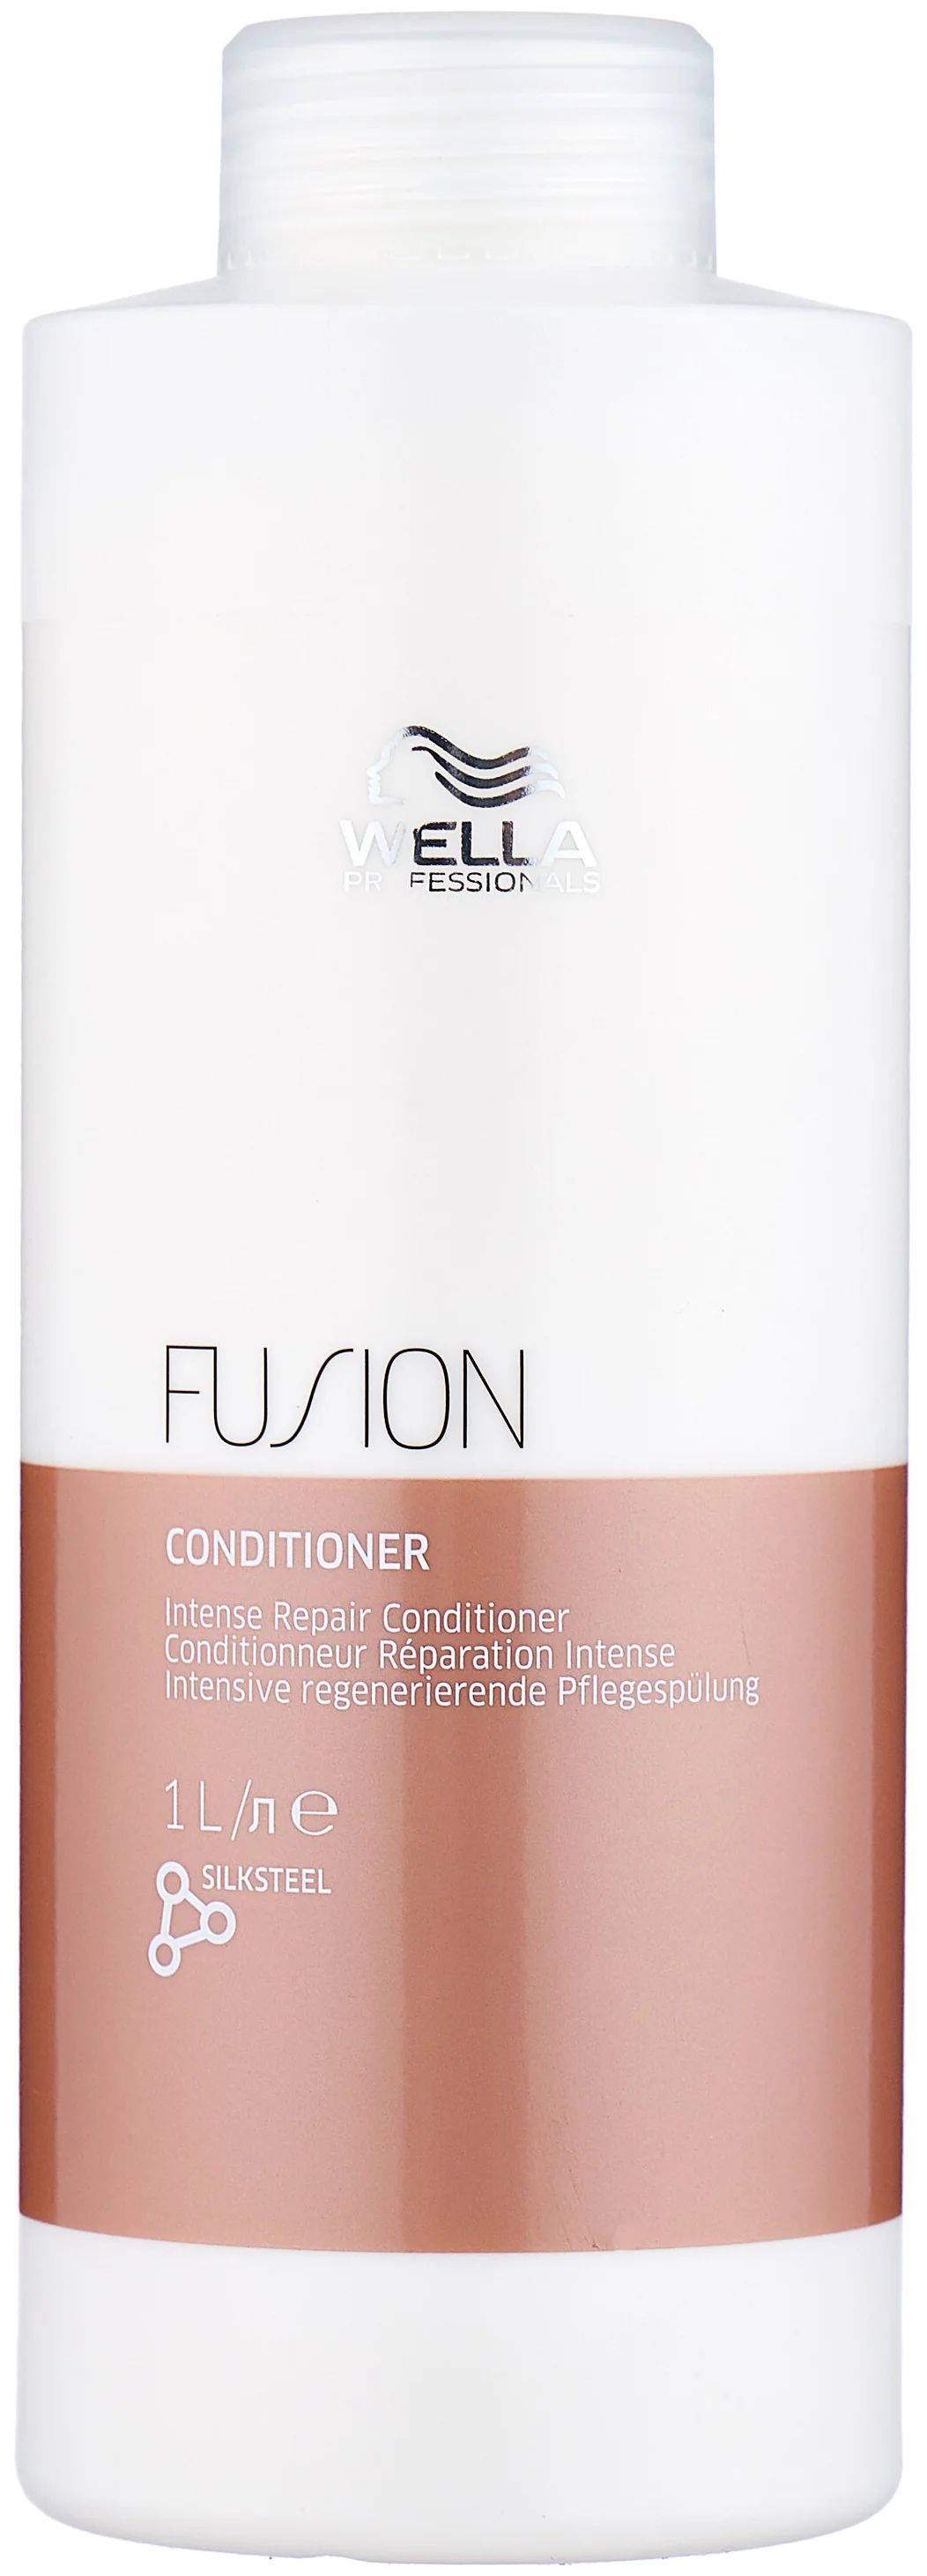 Бальзам для волос Wella Professionals Fusion интенсивно восстанавливающий, 1 л бальзам для волос wella professionals fusion интенсивно восстанавливающий 1 л